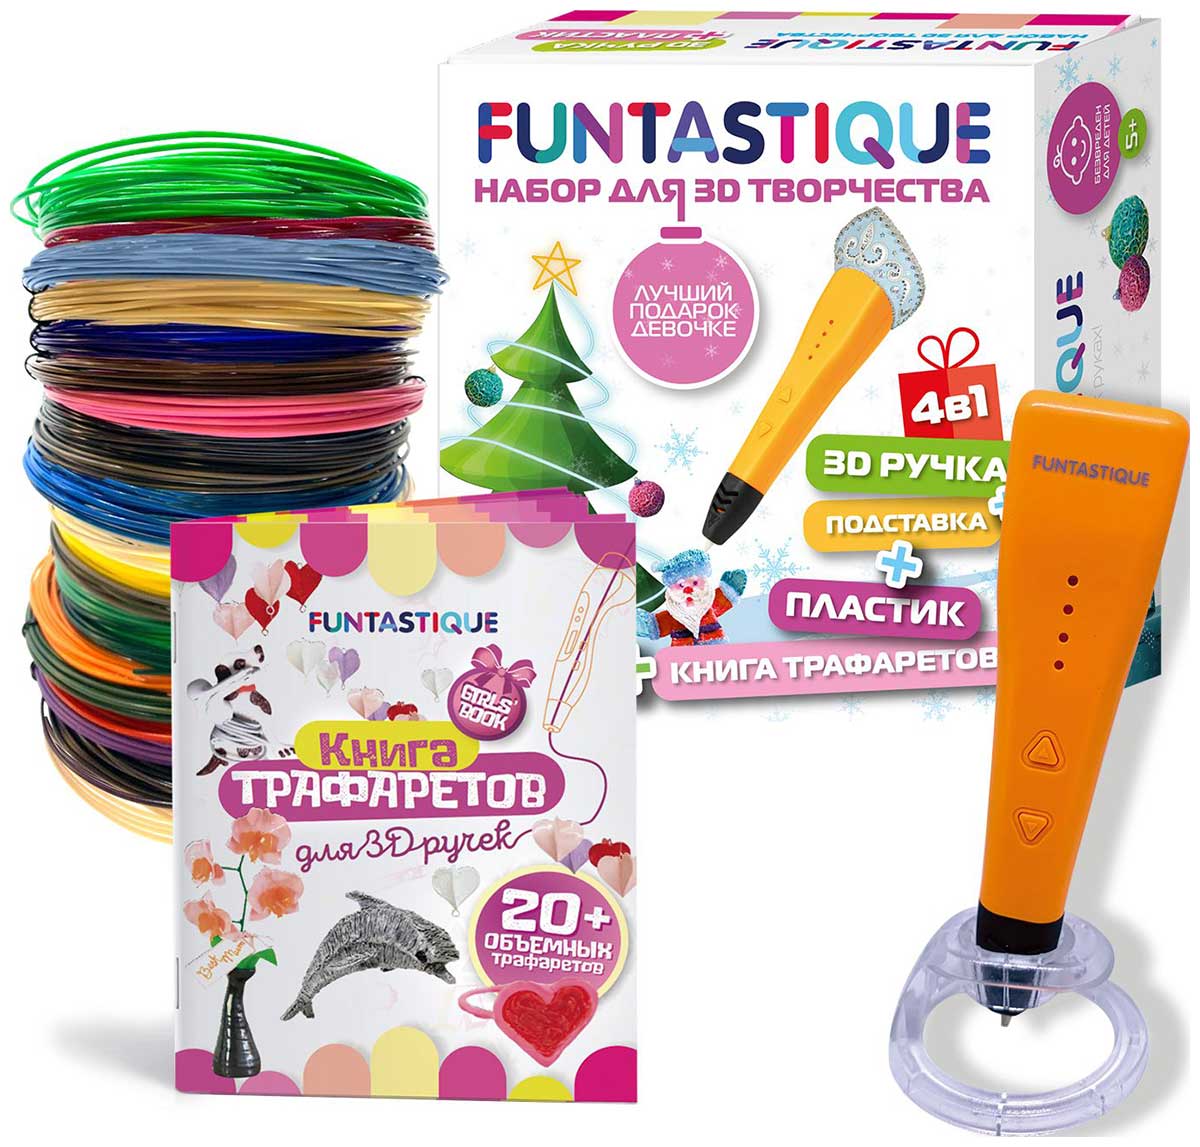 Набор для 3Д творчества Funtastique 4в1 ''Для девочек'' новогодний